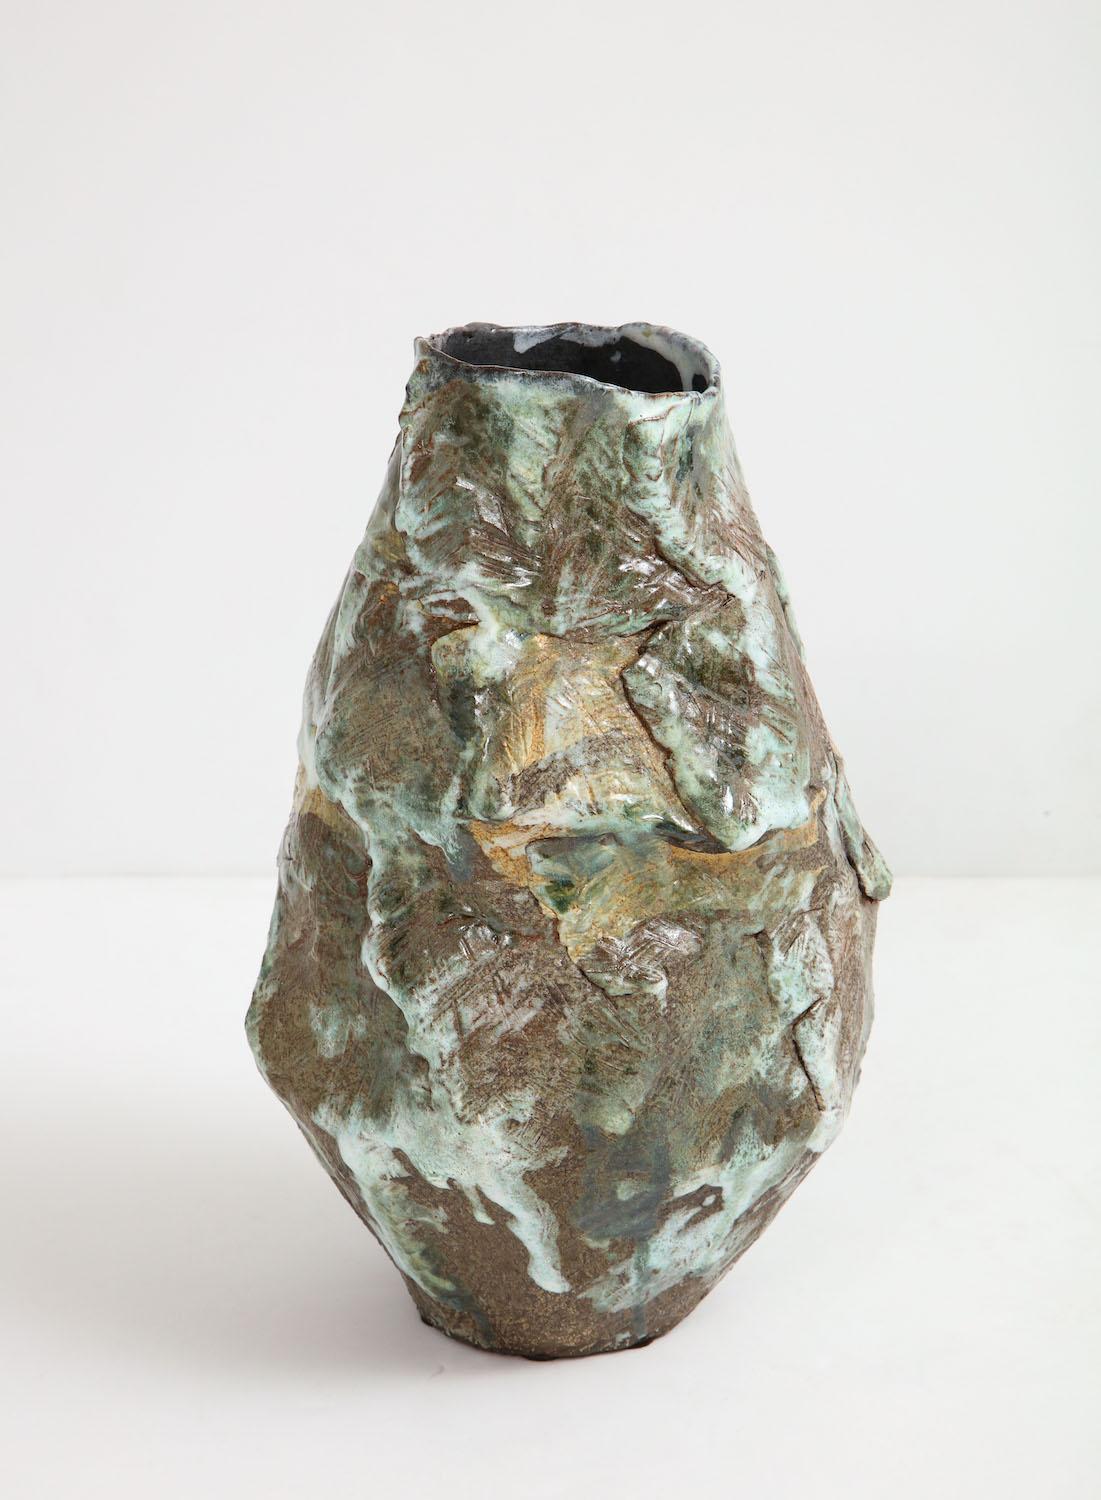 Large sculptural vase #5 by Dena Zemsky. Hand-built, glazed stoneware vase form. Signed and dated on underside.